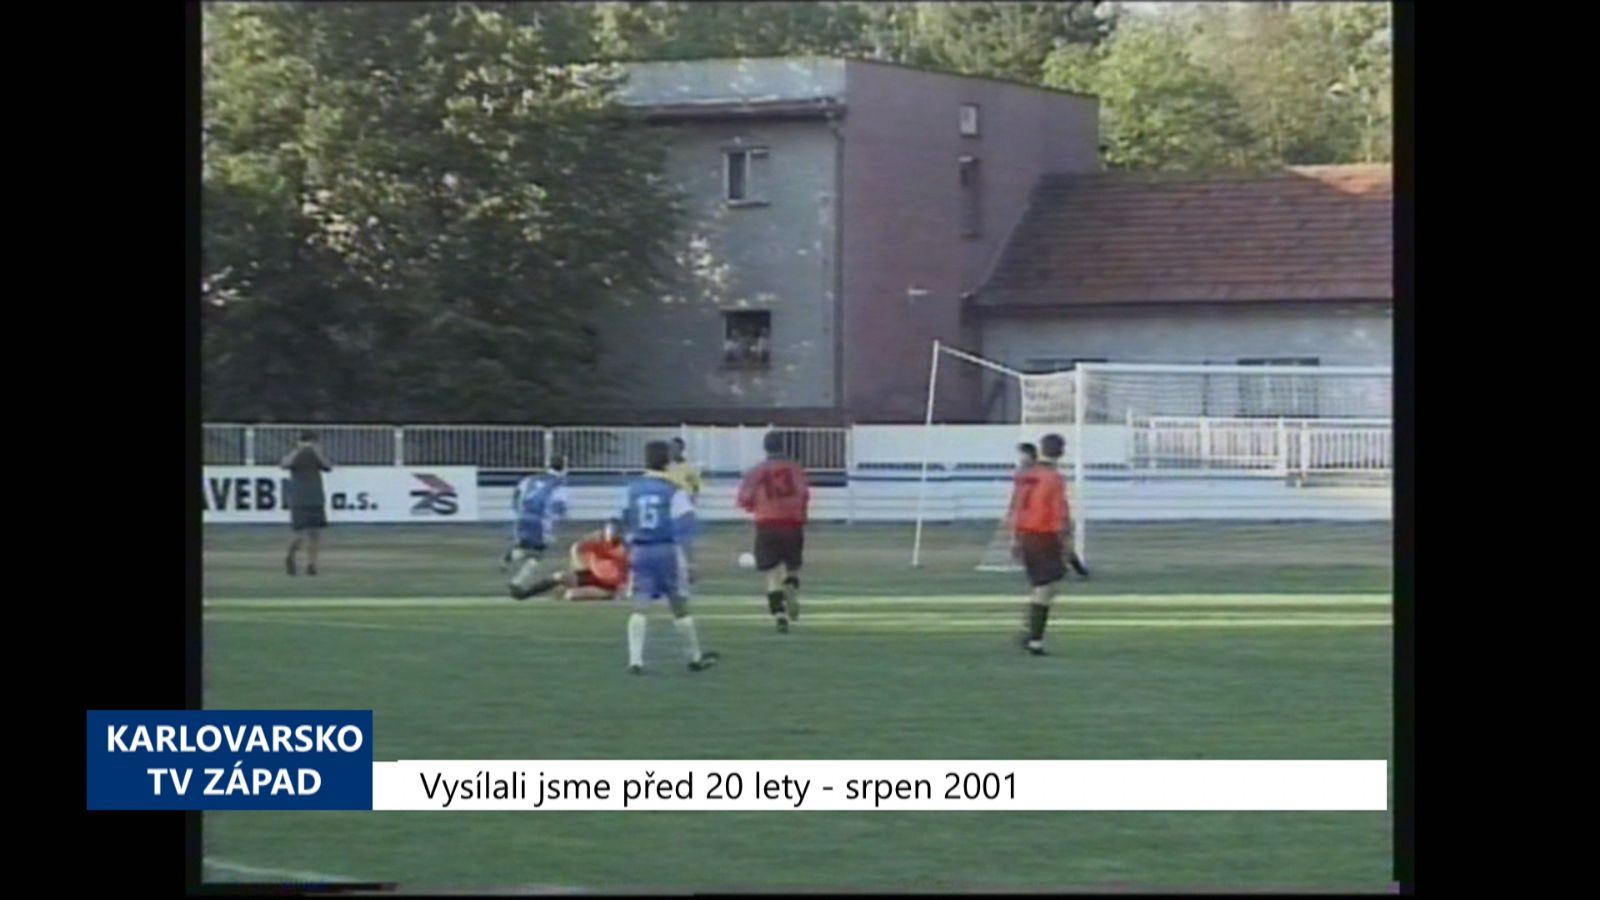 2001 – Cheb: Hráči Unionu zvítězili nad Sokolem Blovice 7:0 (TV Západ)